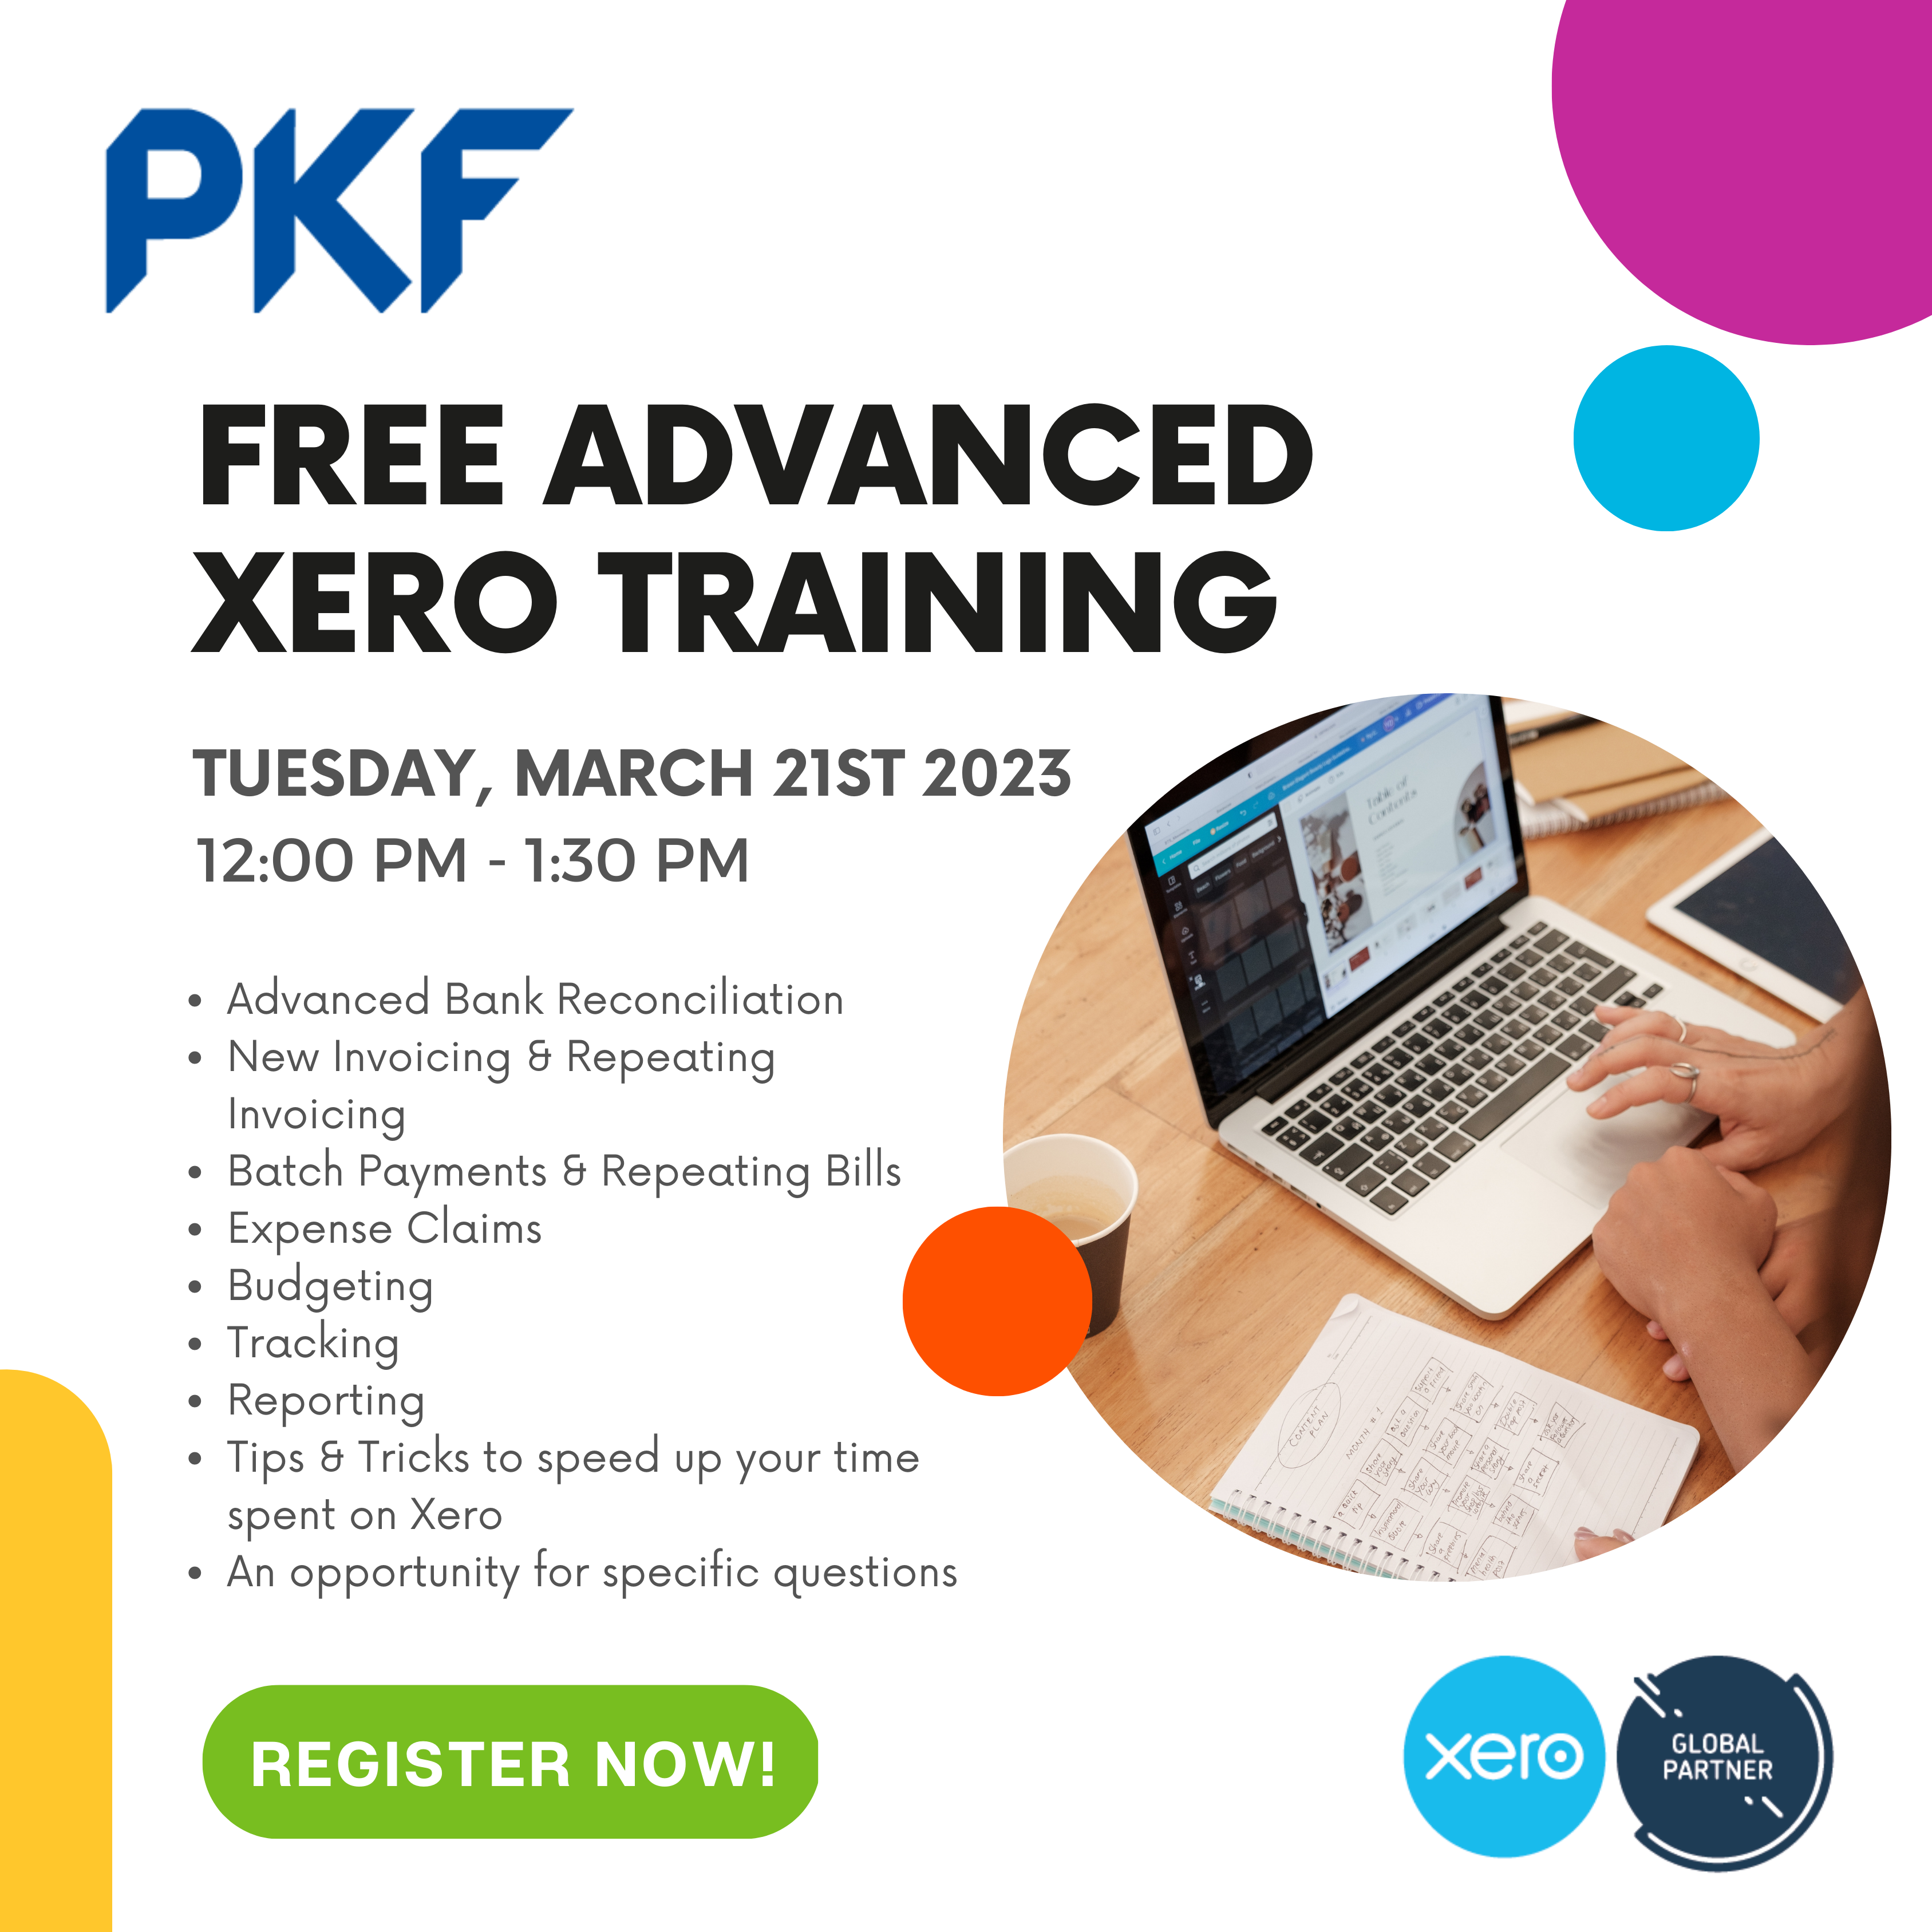 Free Xero training